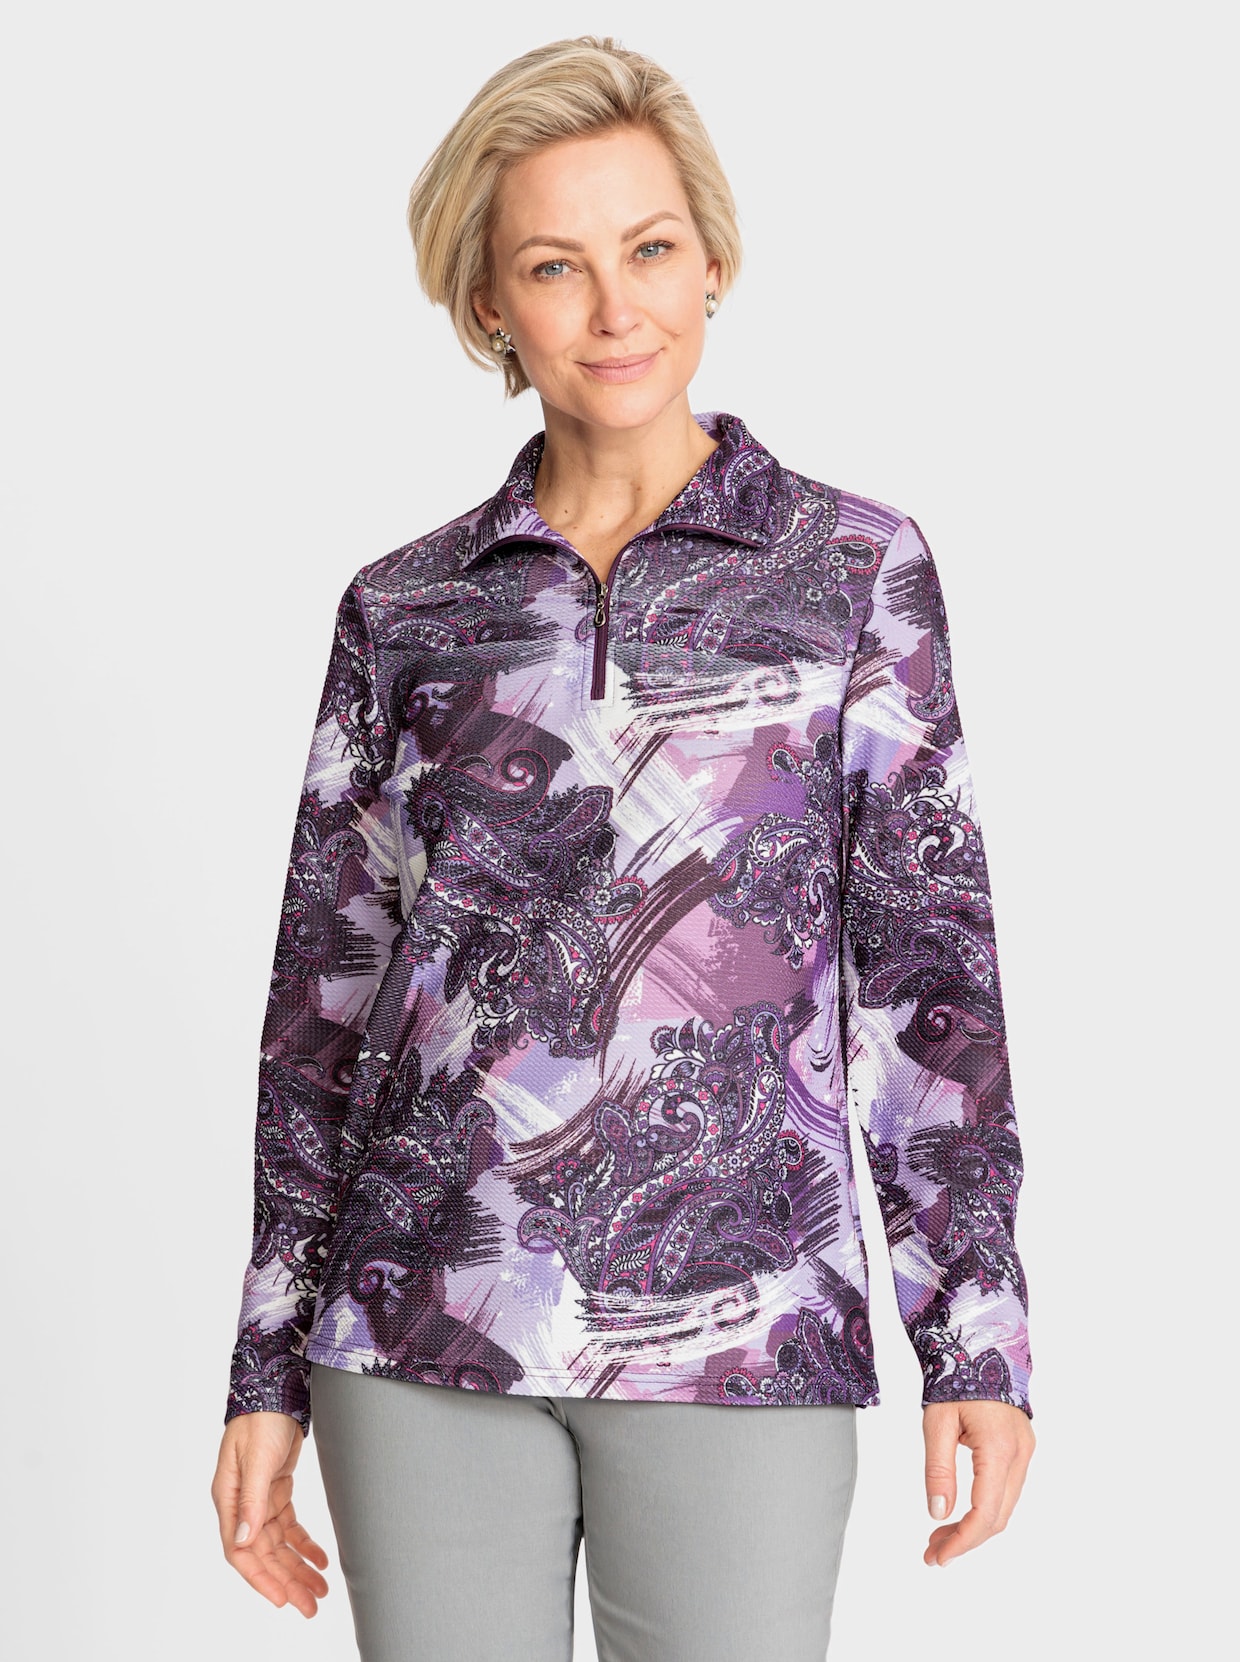 Winter-Shirt - lavendel-ecru-bedruckt